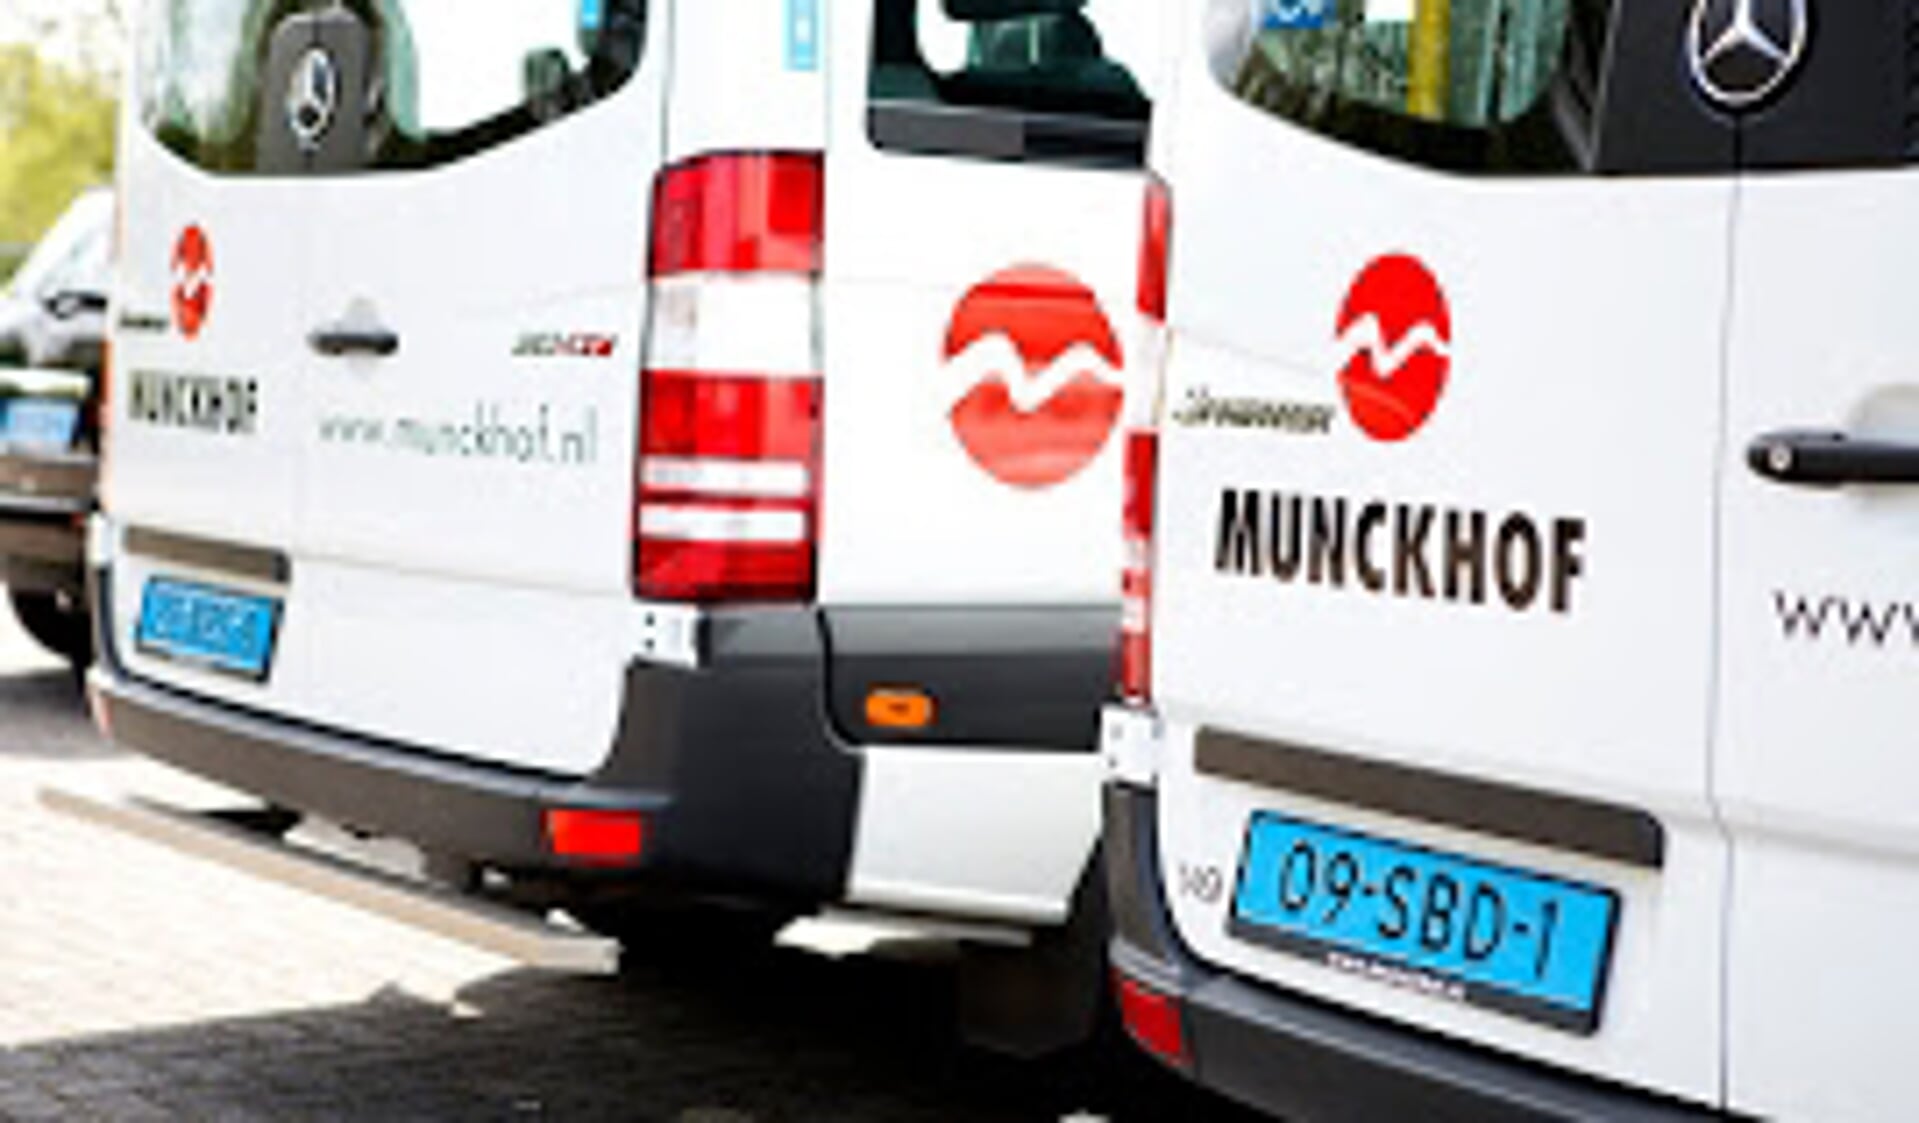 Het wmo-vervoer voor de gemeenten Alkmaar, Bergen, Castricum, Heerhugowaard, Heiloo, Langedijk en Uitgeest wordt in ieder geval de komende twee jaar uitgevoerd door Munckhof.